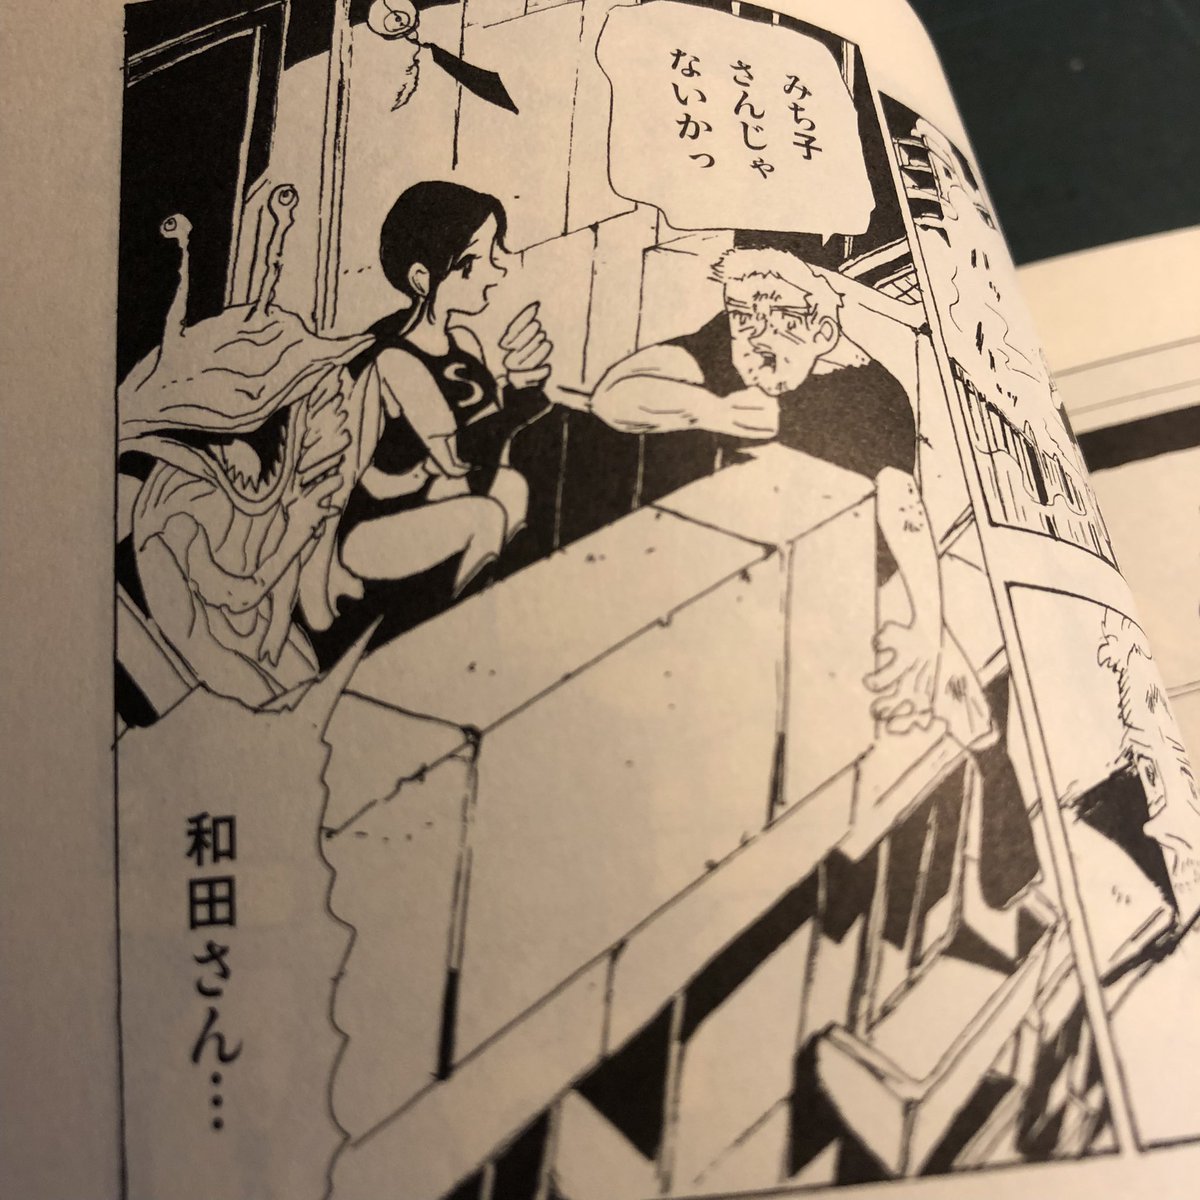 発売中の『SFマガジン』(早川書房)に、宮崎夏次系先生の最新短編「アンナか、レニーナ」が掲載されています。ぜひご覧ください! 